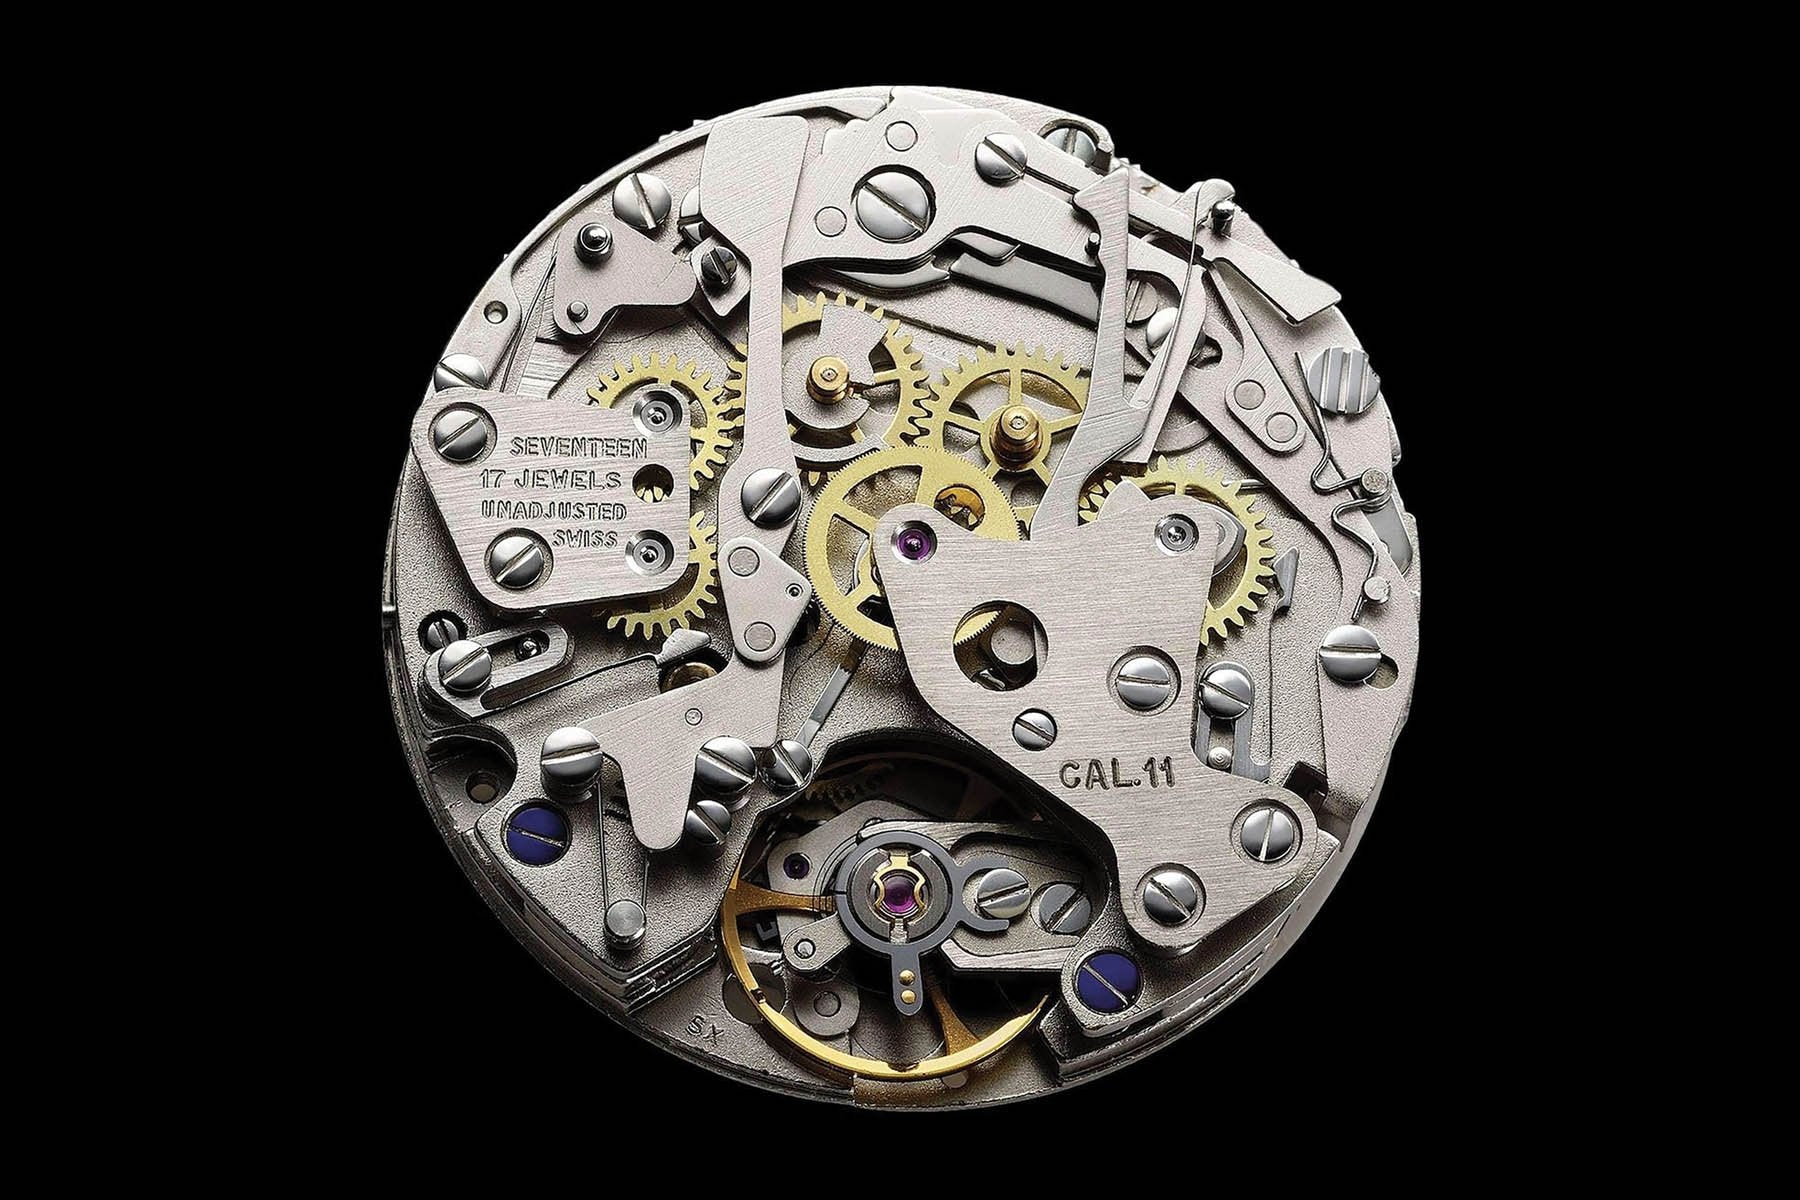 history-calibre-11-automatic-chronograph lumeville montre vintage